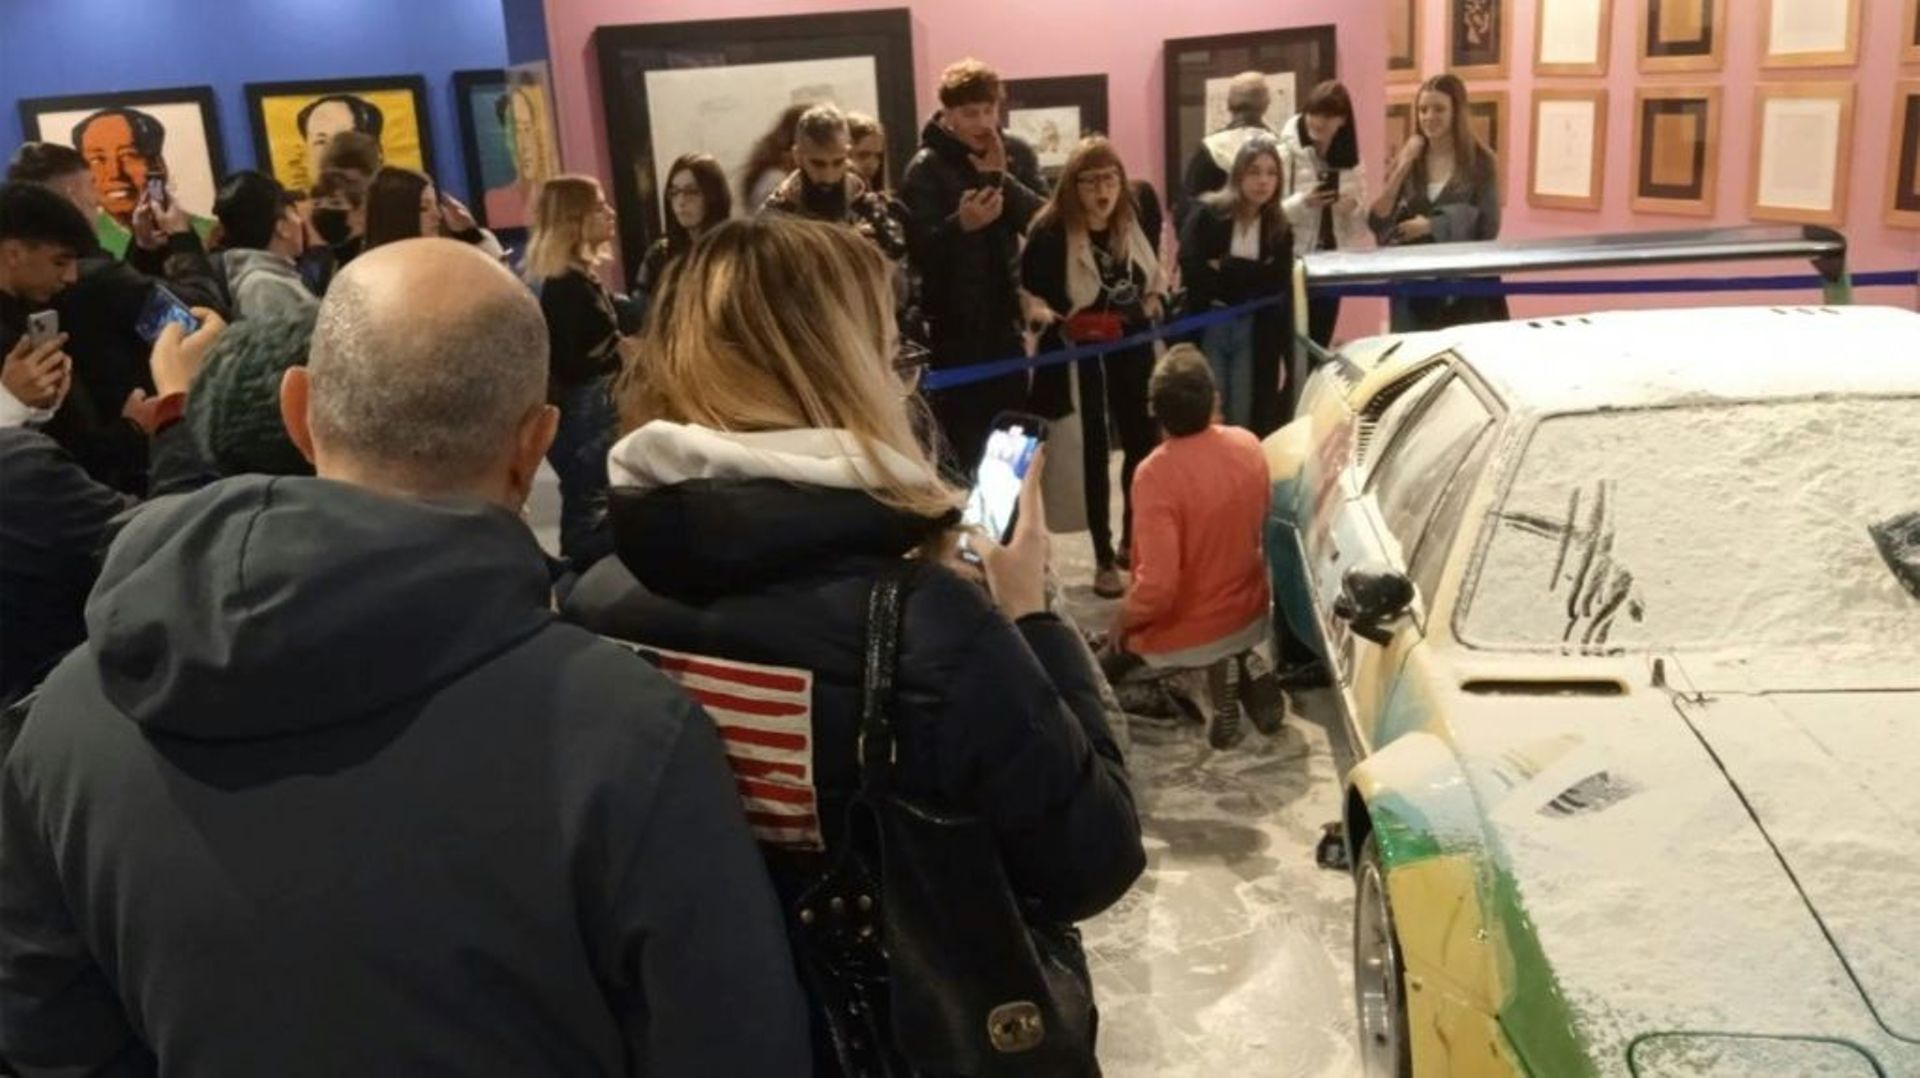 Des militants de l’organisation écologiste "Dernière génération" ont recouvert de farine une voiture peinte en 1979 par Andy Warhol et présentée dans une rétrospective à Milan, en Italie, le 18 novembre 2022. Photo prise et distribuée par "Dernière généra